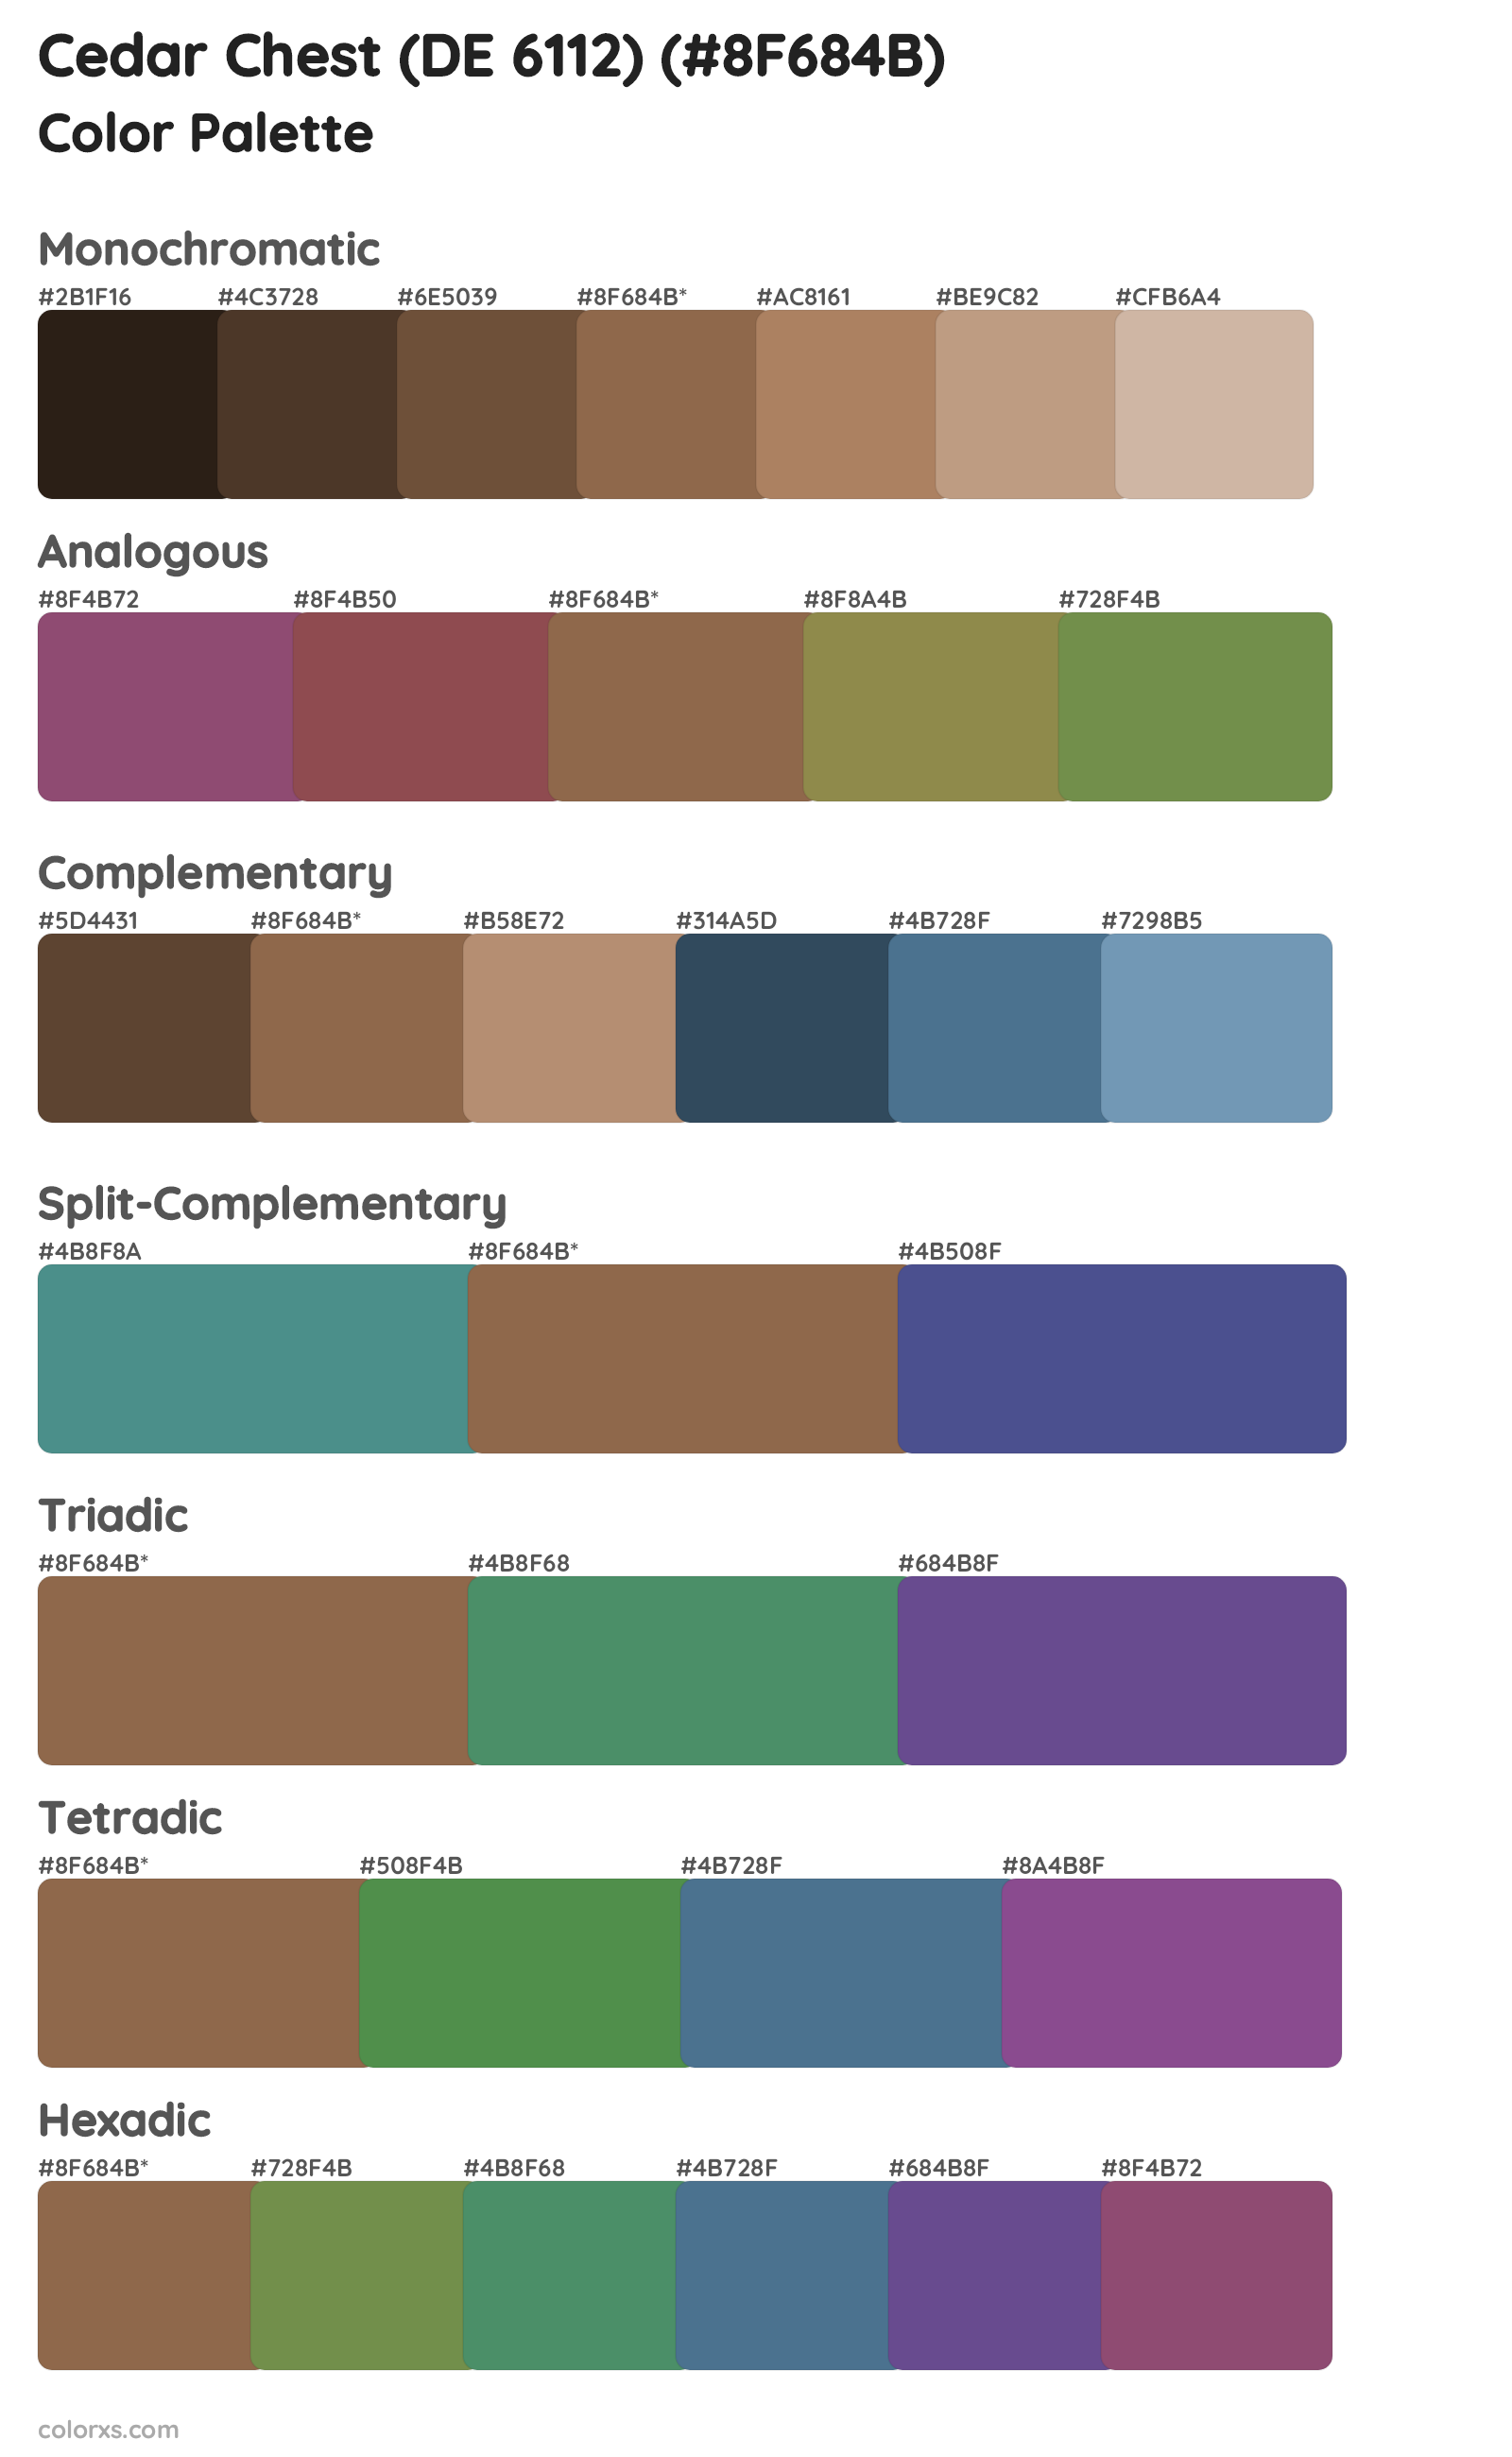 Cedar Chest (DE 6112) Color Scheme Palettes